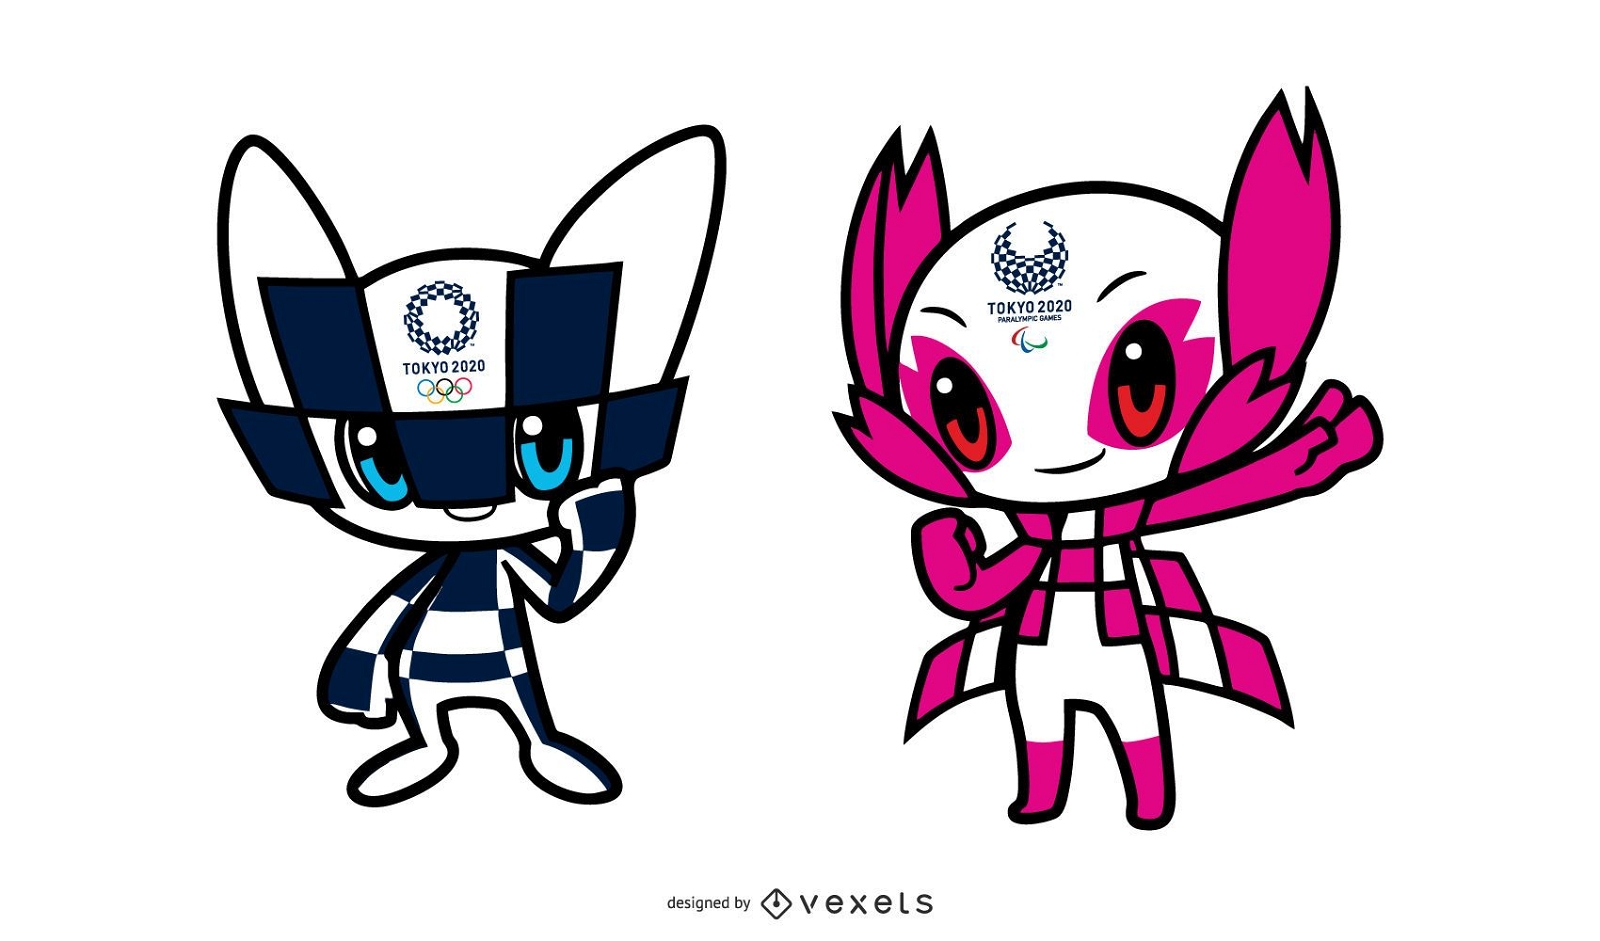 Diseño de personajes de la mascota de los Juegos Olímpicos de Tokio 2020